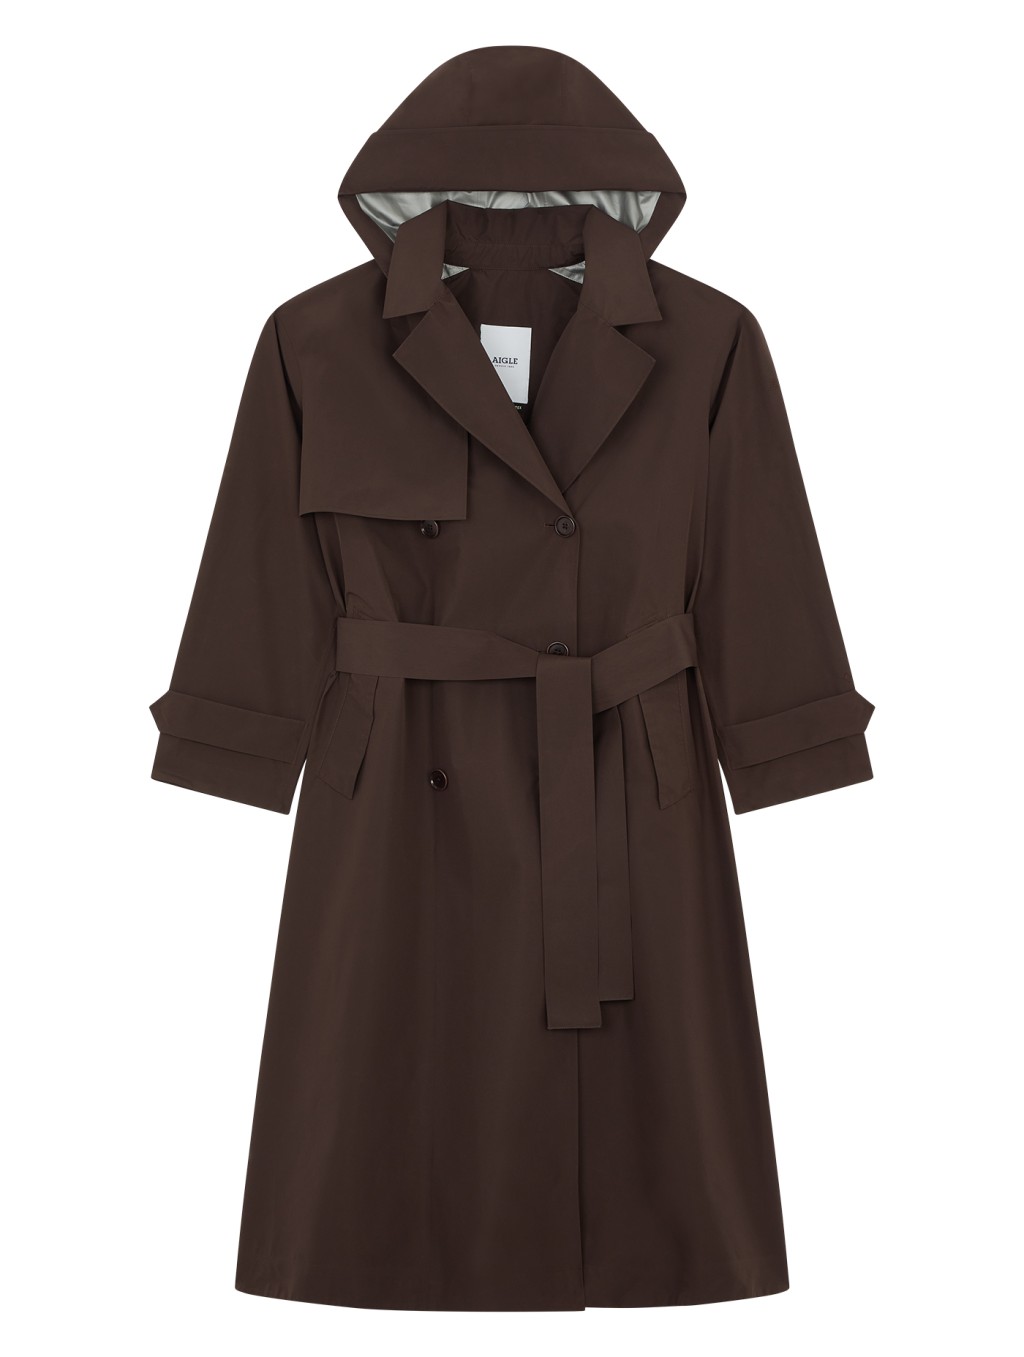 再生纤维Gore-Tex长身女装外套/$5,500，具备持久的防水、防风及透气功能。